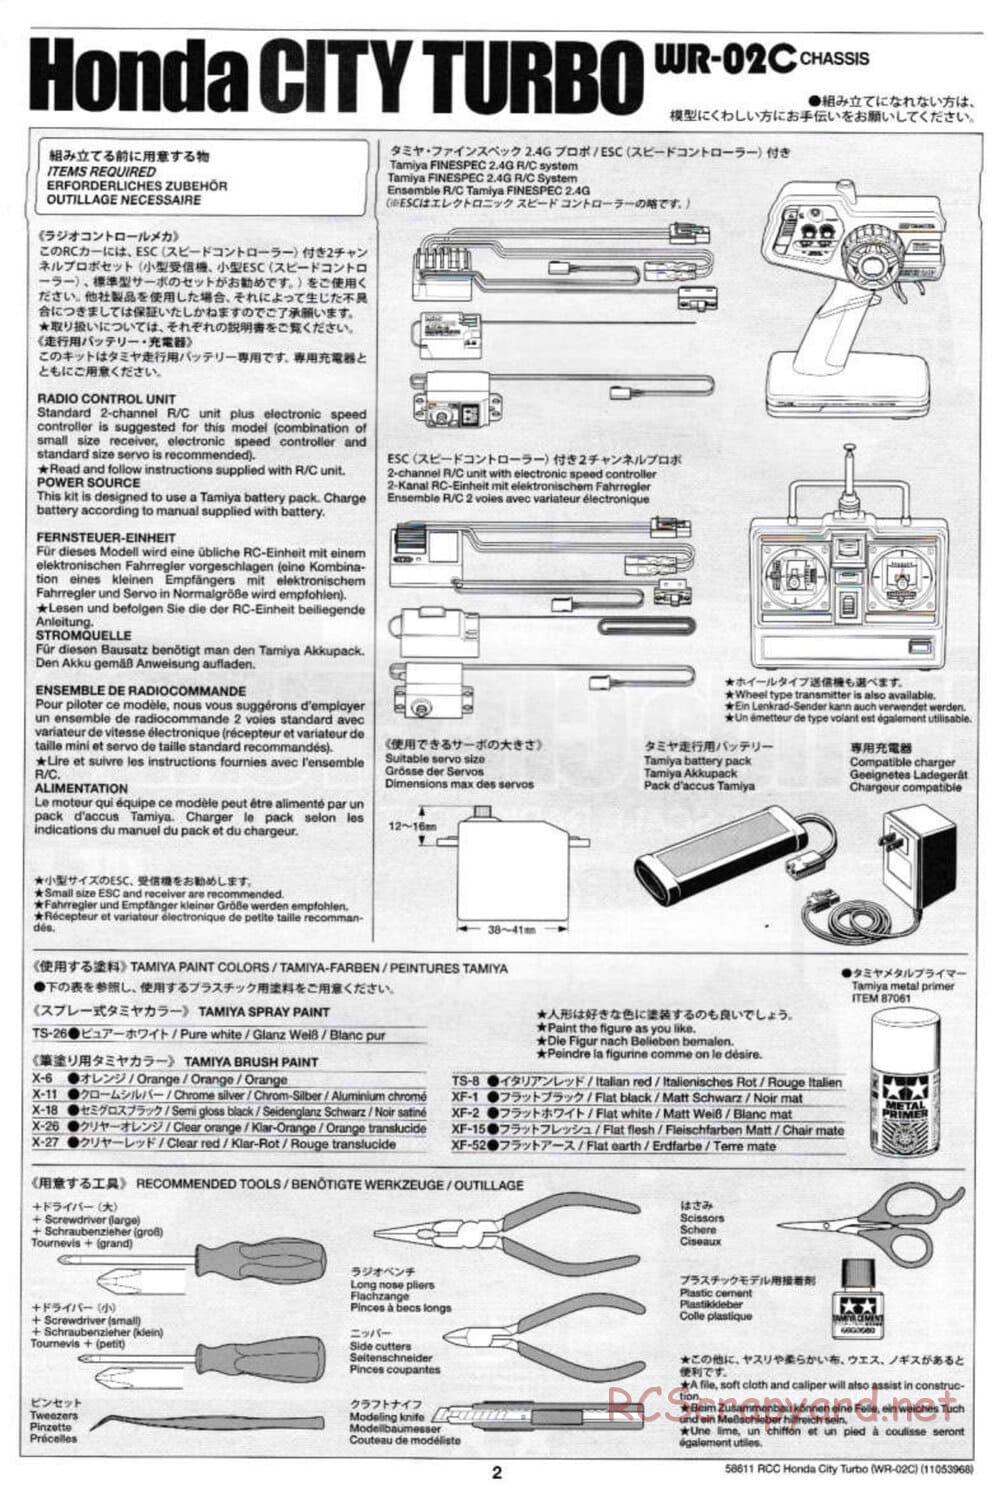 Tamiya - Honda City Turbo - WR-02C Chassis - Manual - Page 2